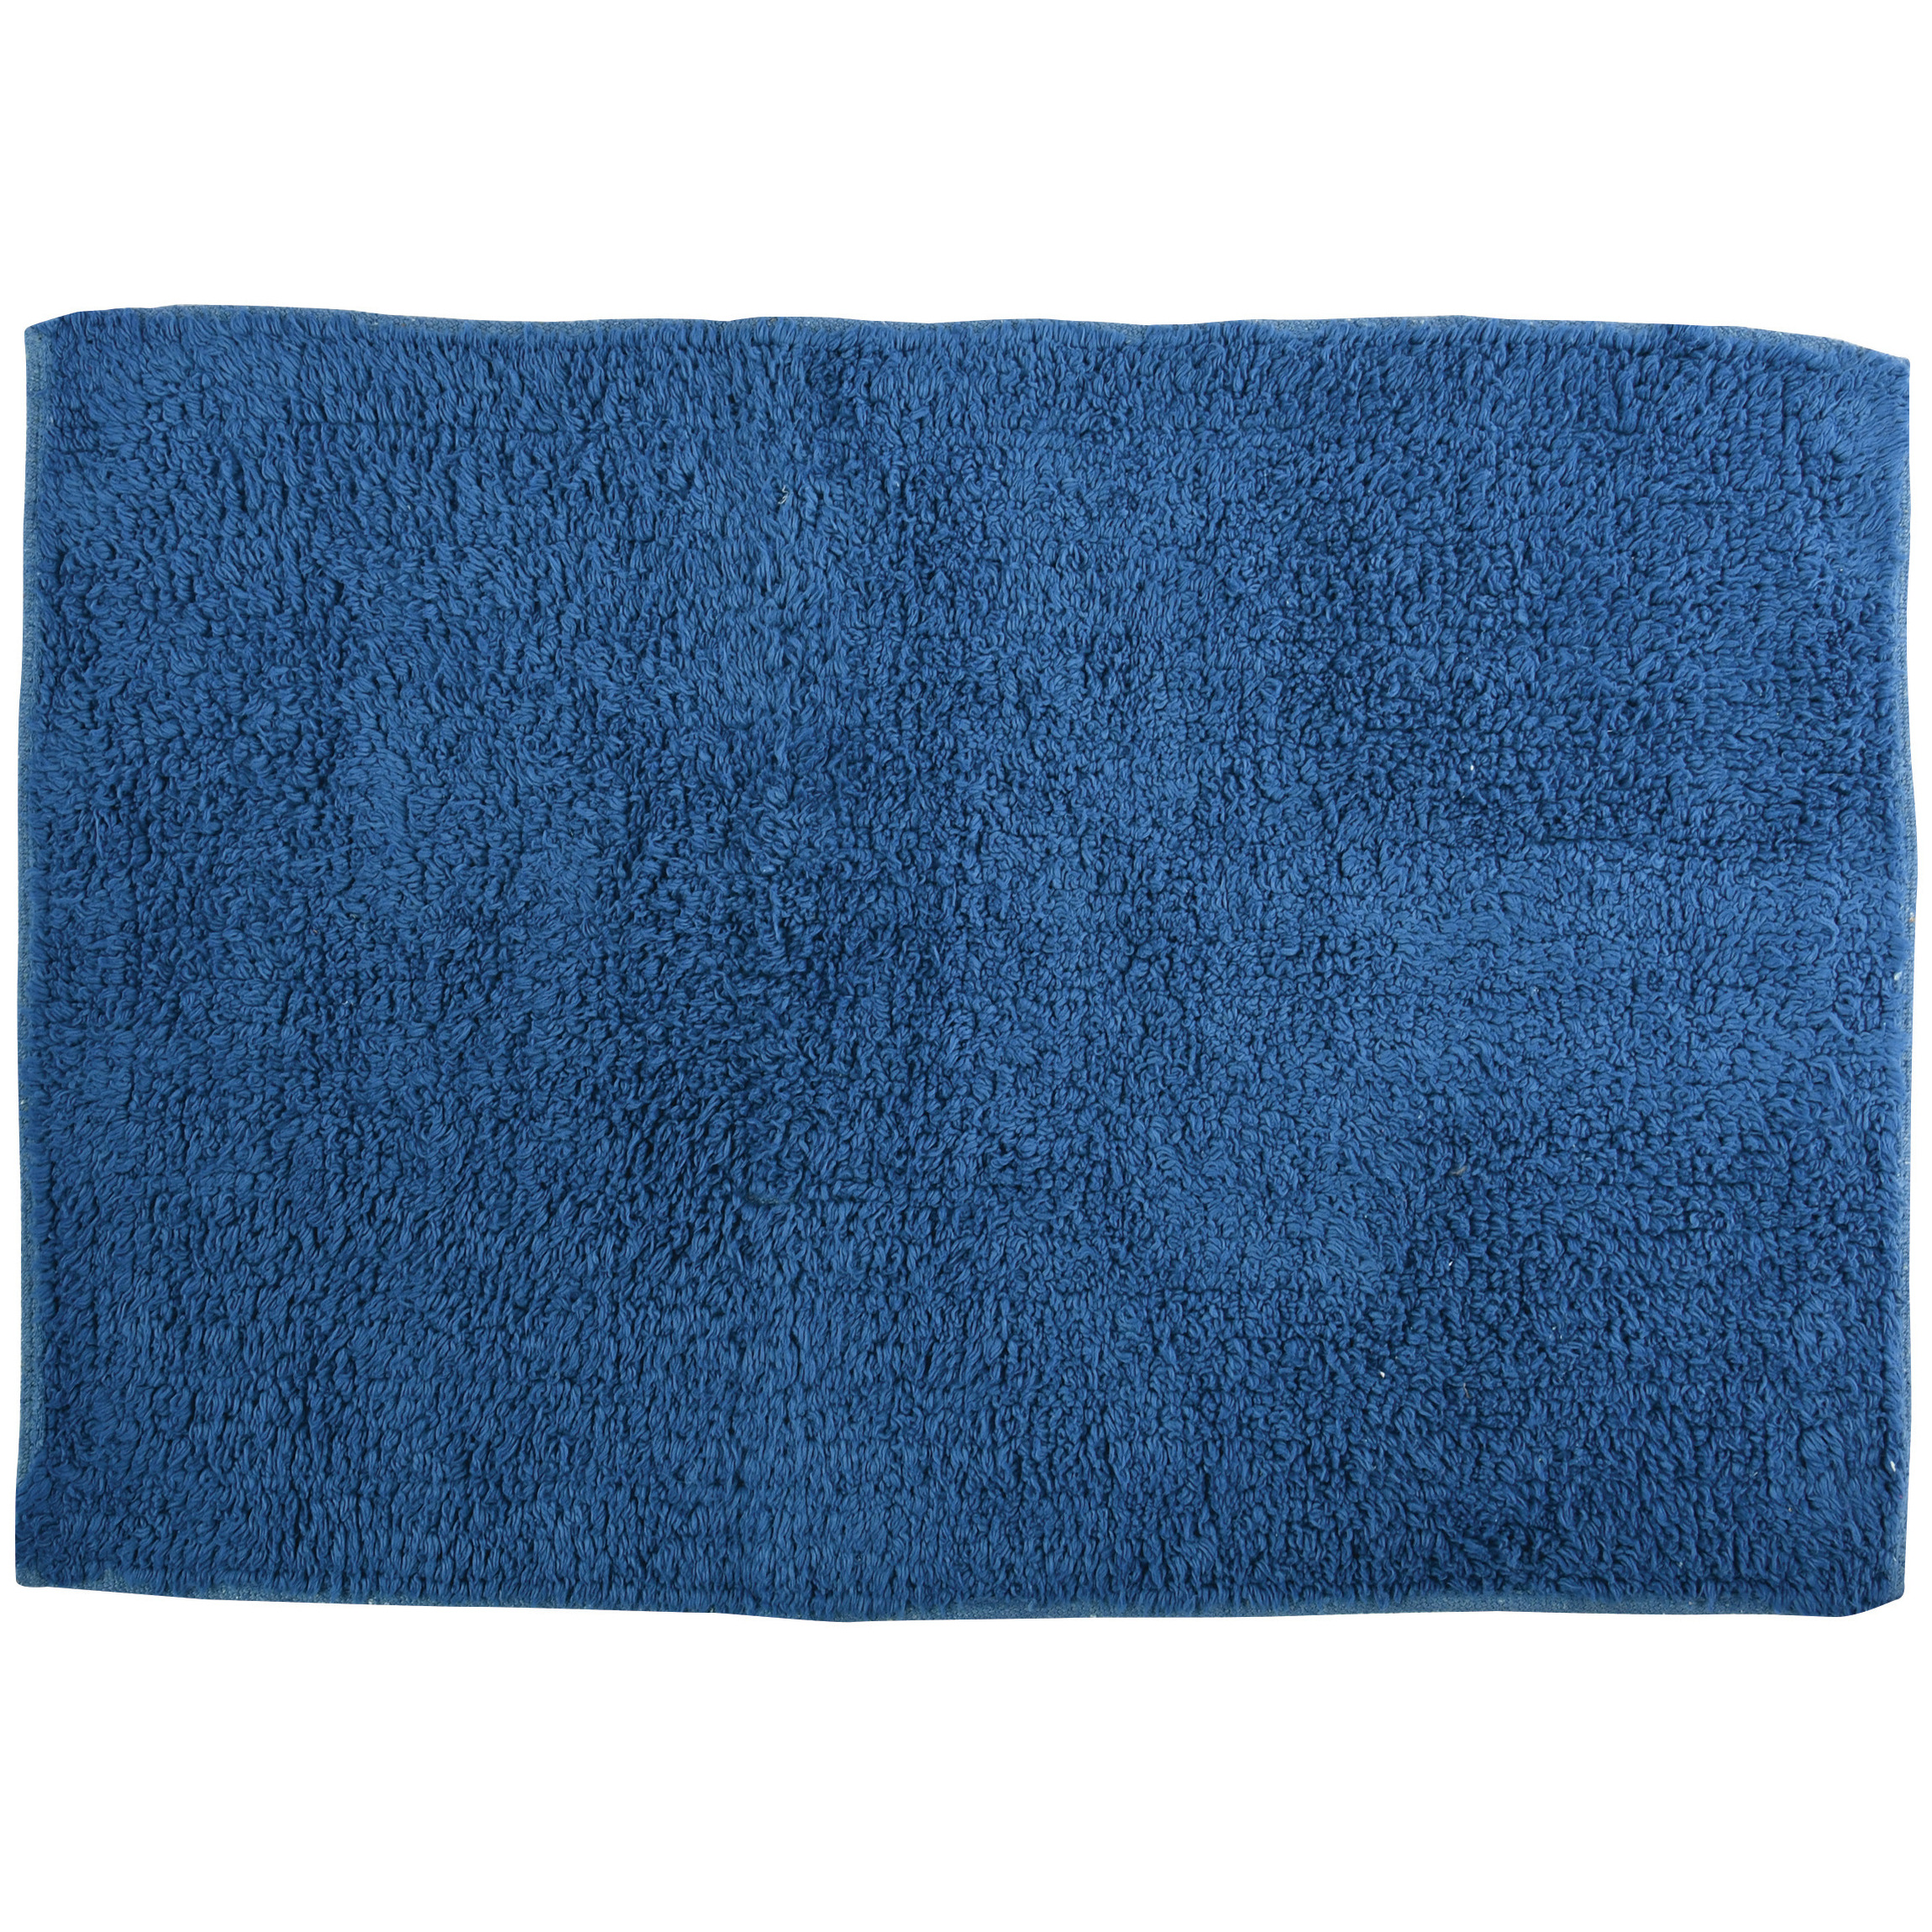 Badkamerkleedje-badmat voor op de vloer blauw 45 x 70 cm